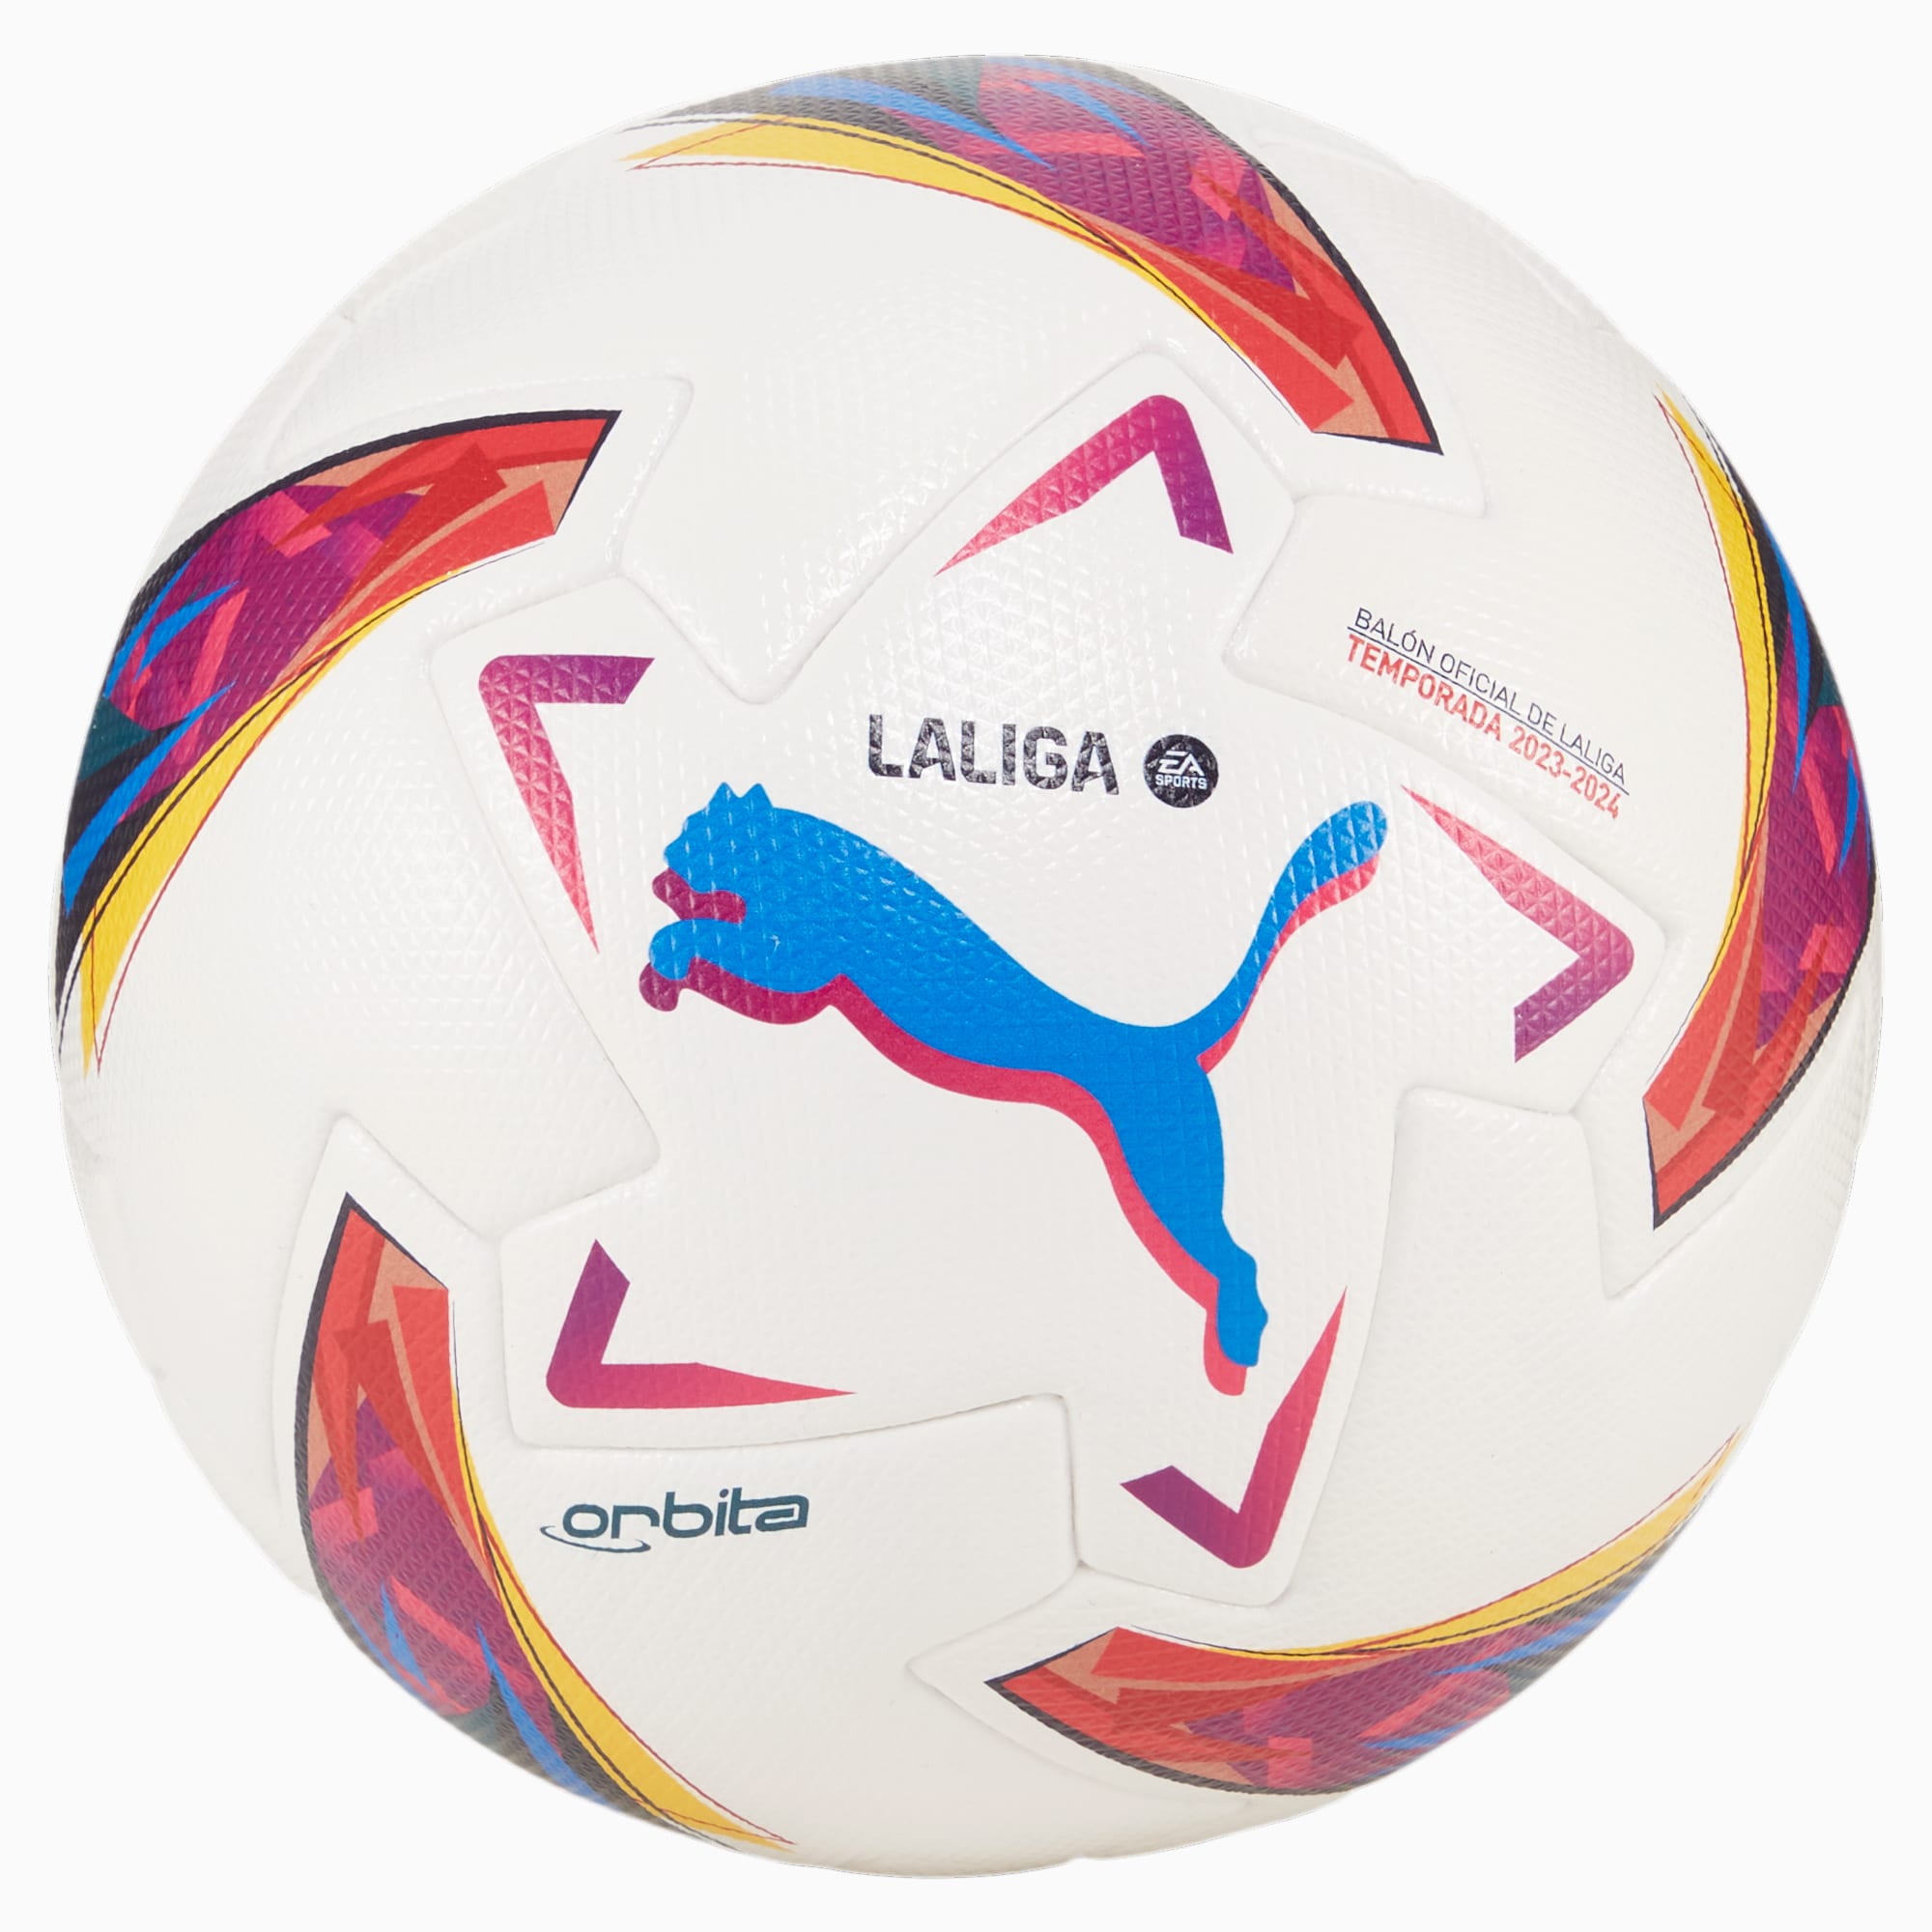 PUMA Orbita LaLiga 1 Fußball Für Damen, Weiß, Größe: 5, Accessoires